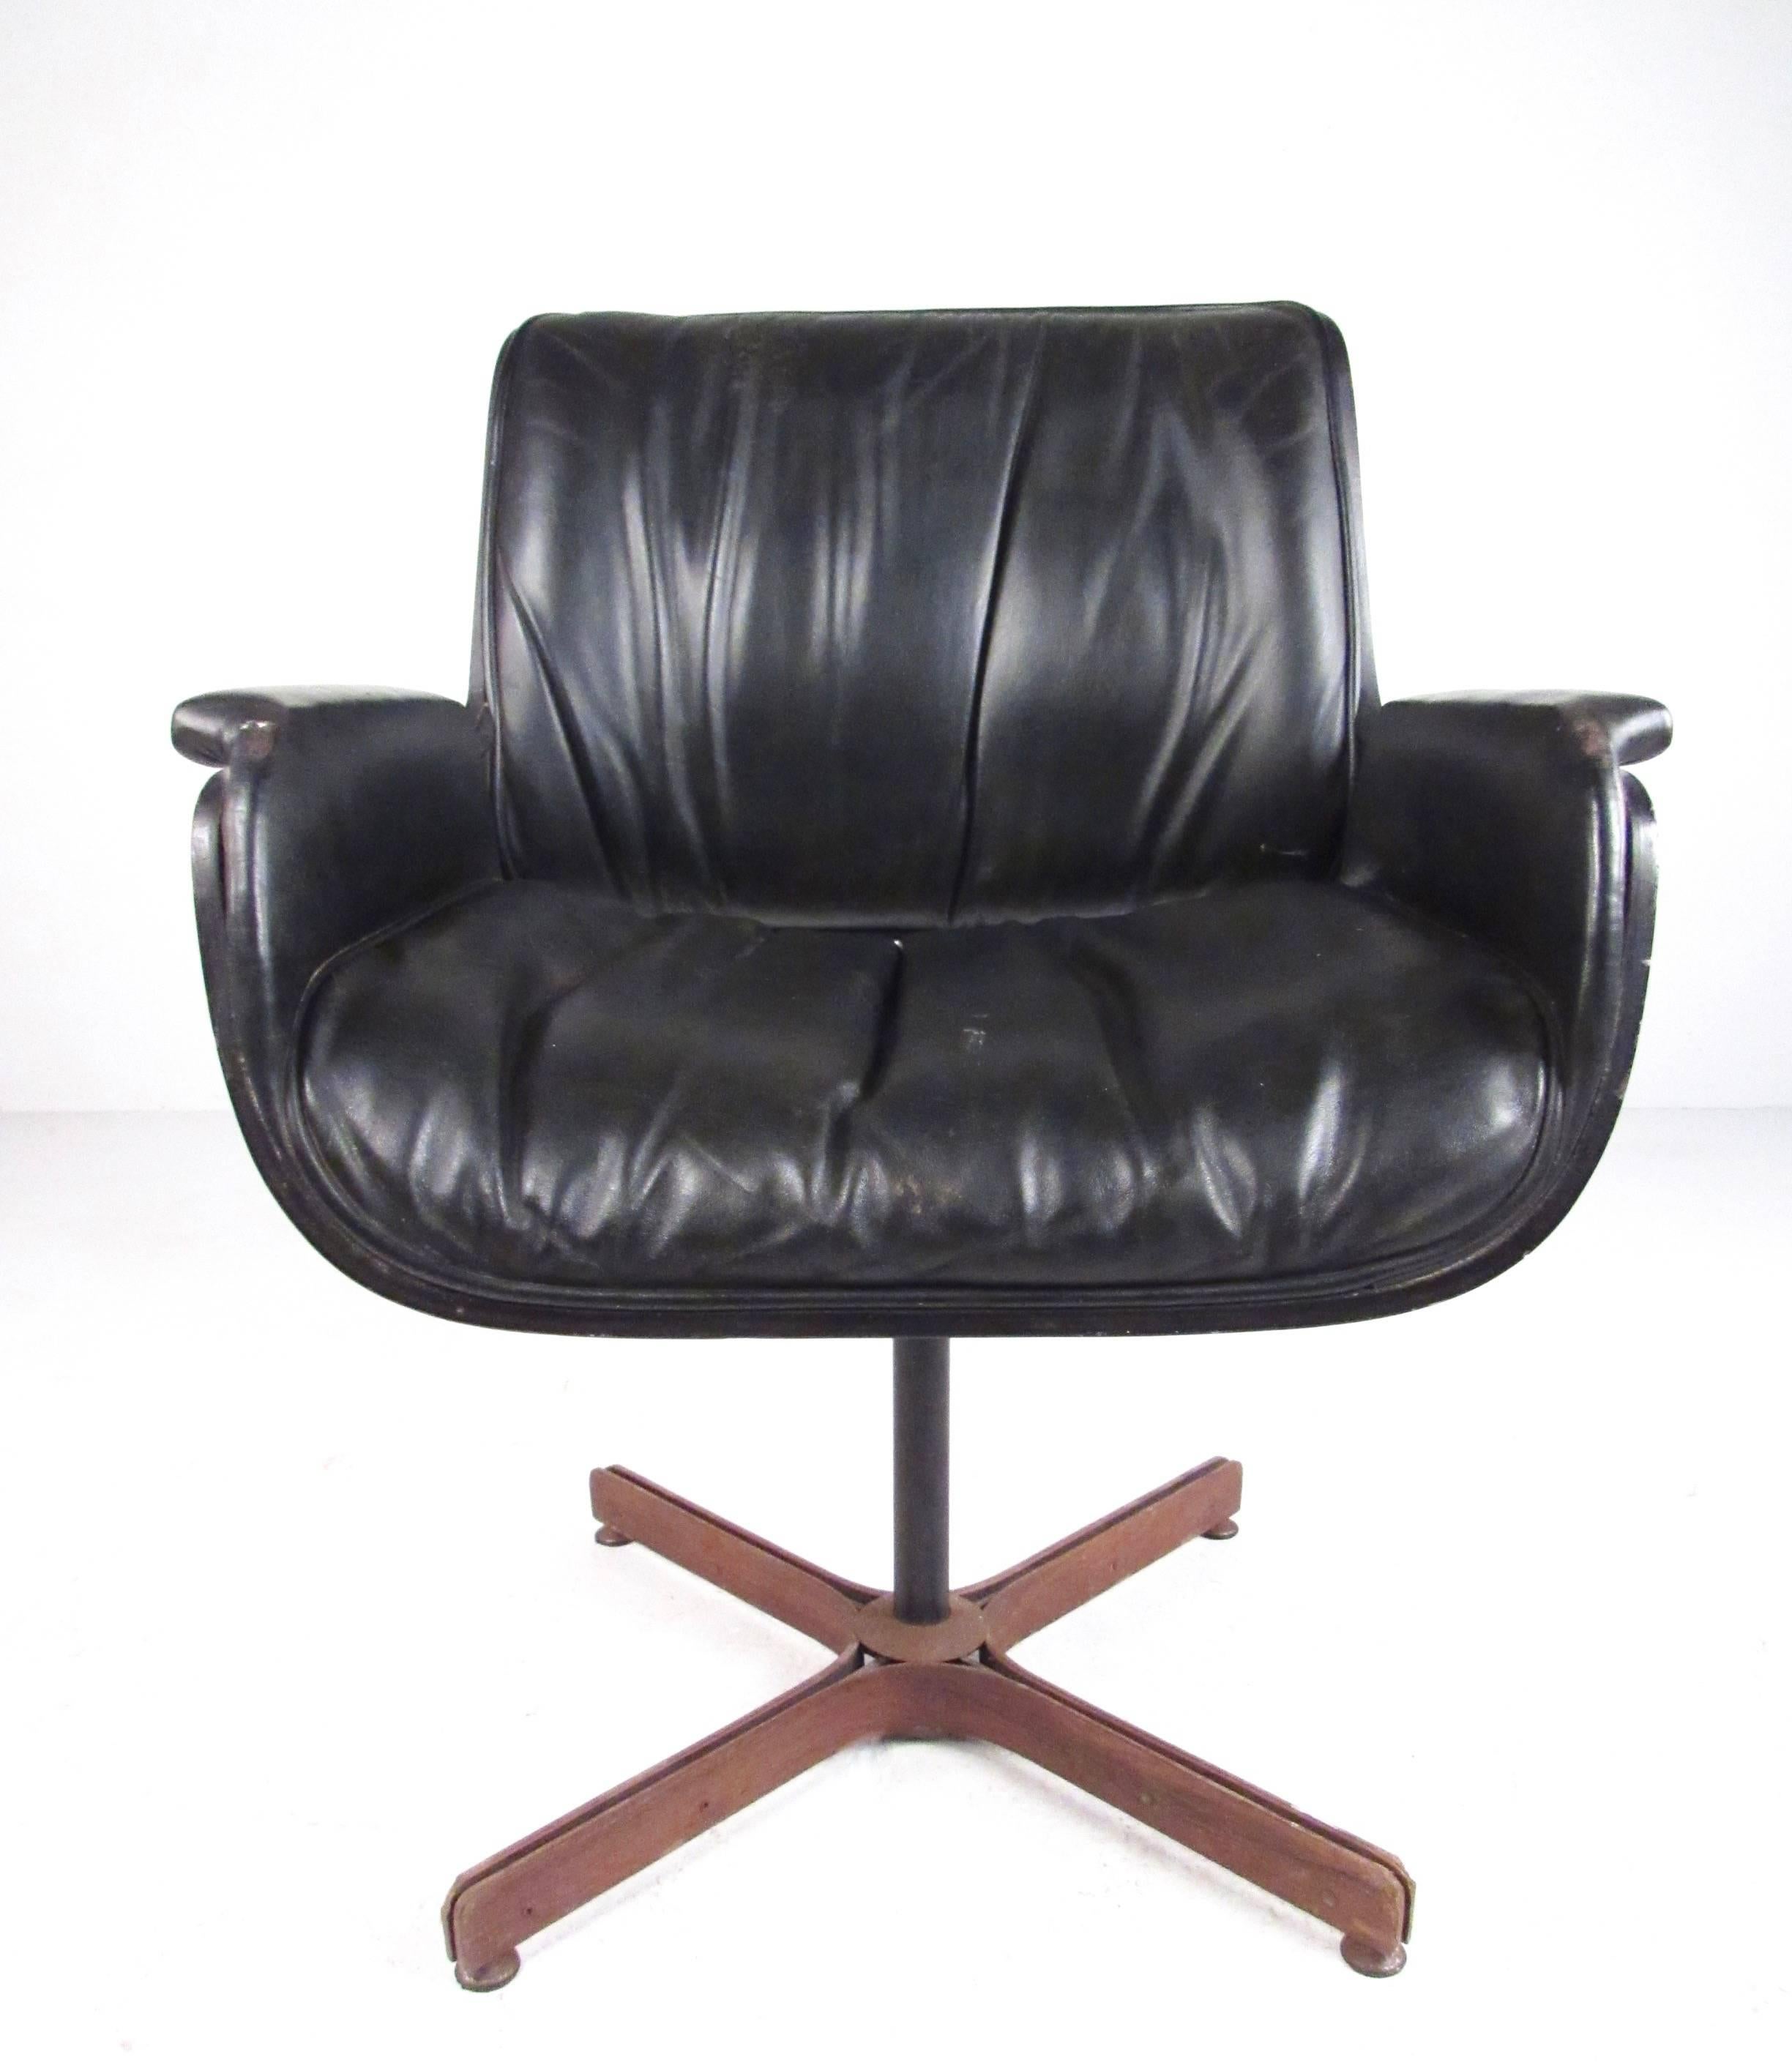 Ce fauteuil en cuir unique de style Plycraft est doté d'une coque en bois courbé, d'un revêtement en cuir vintage moelleux et d'une base pivotante en métal. Le design moderne et élégant est un ajout classique du milieu du siècle à tout intérieur de